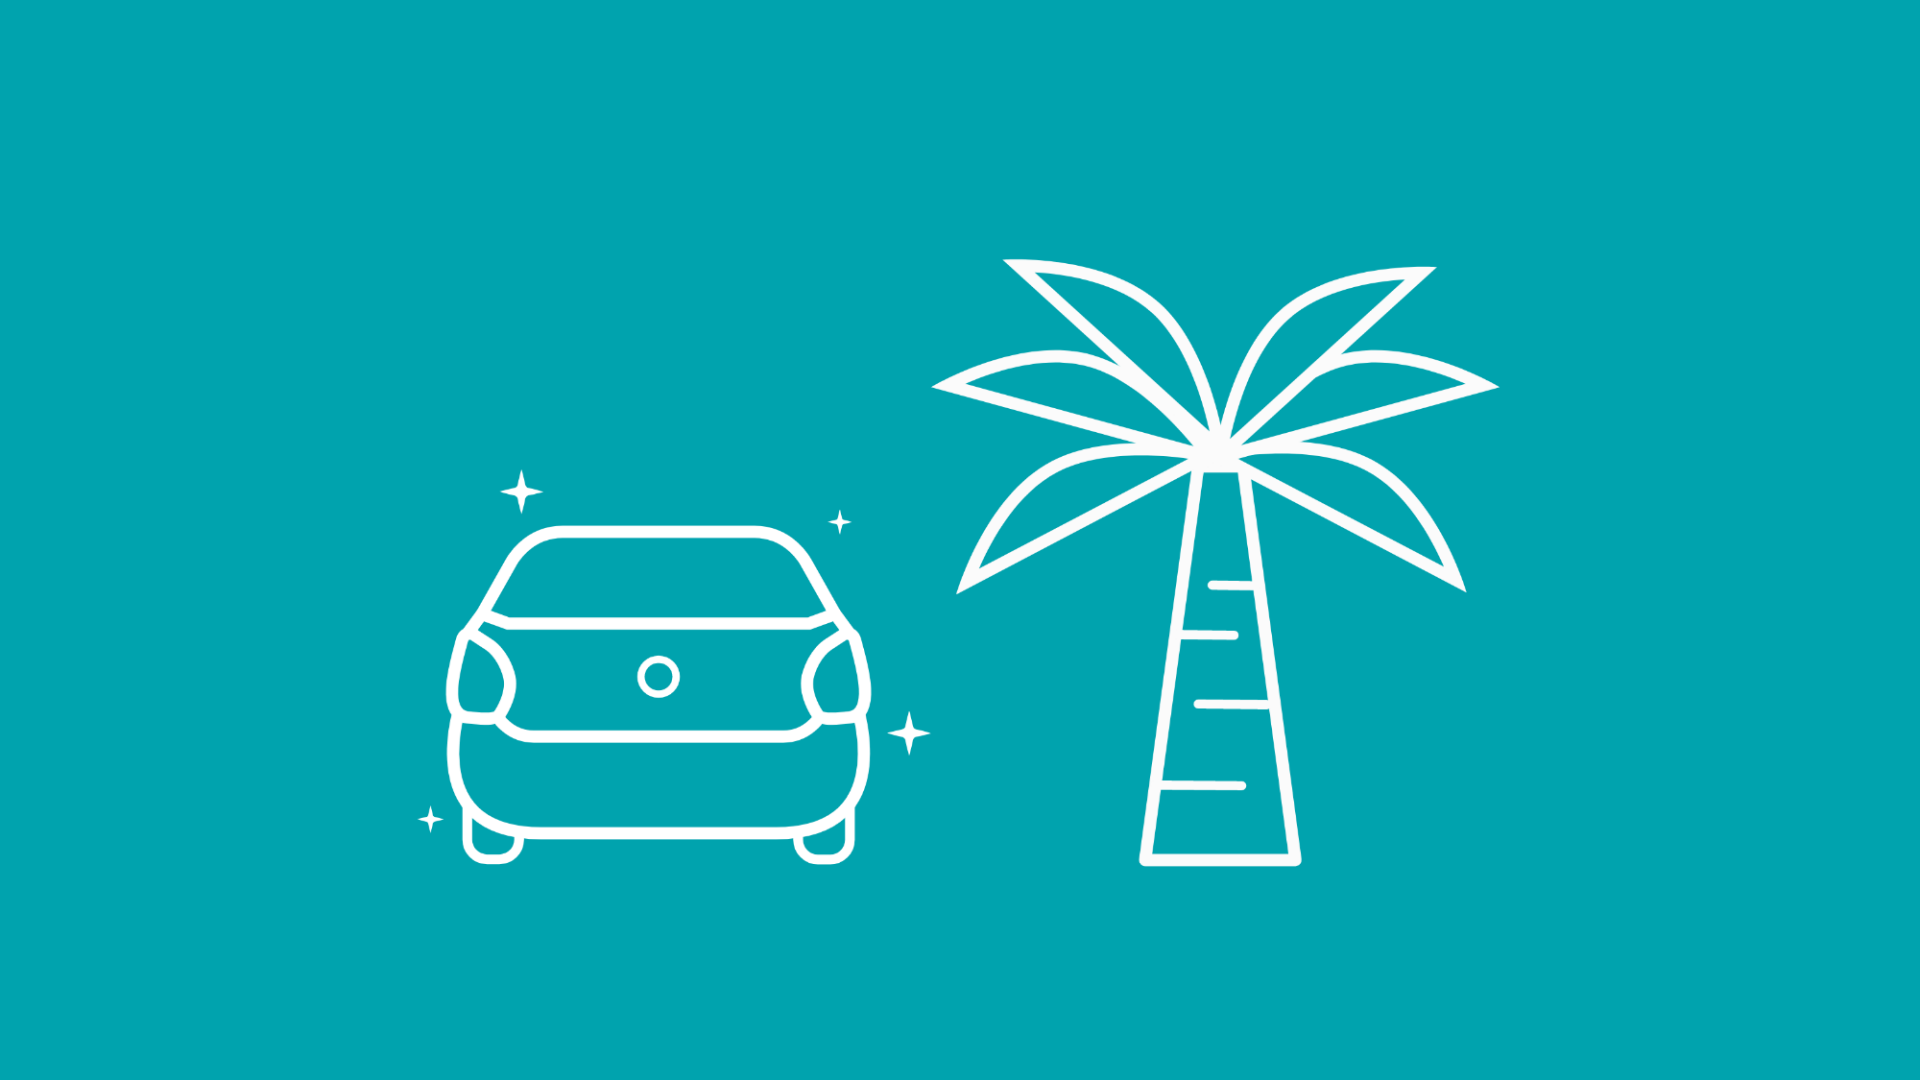 Zu sehen ist ein E-Auto und eine Palme, was den Urlaub mit Elektroauto verdeutlichen soll.